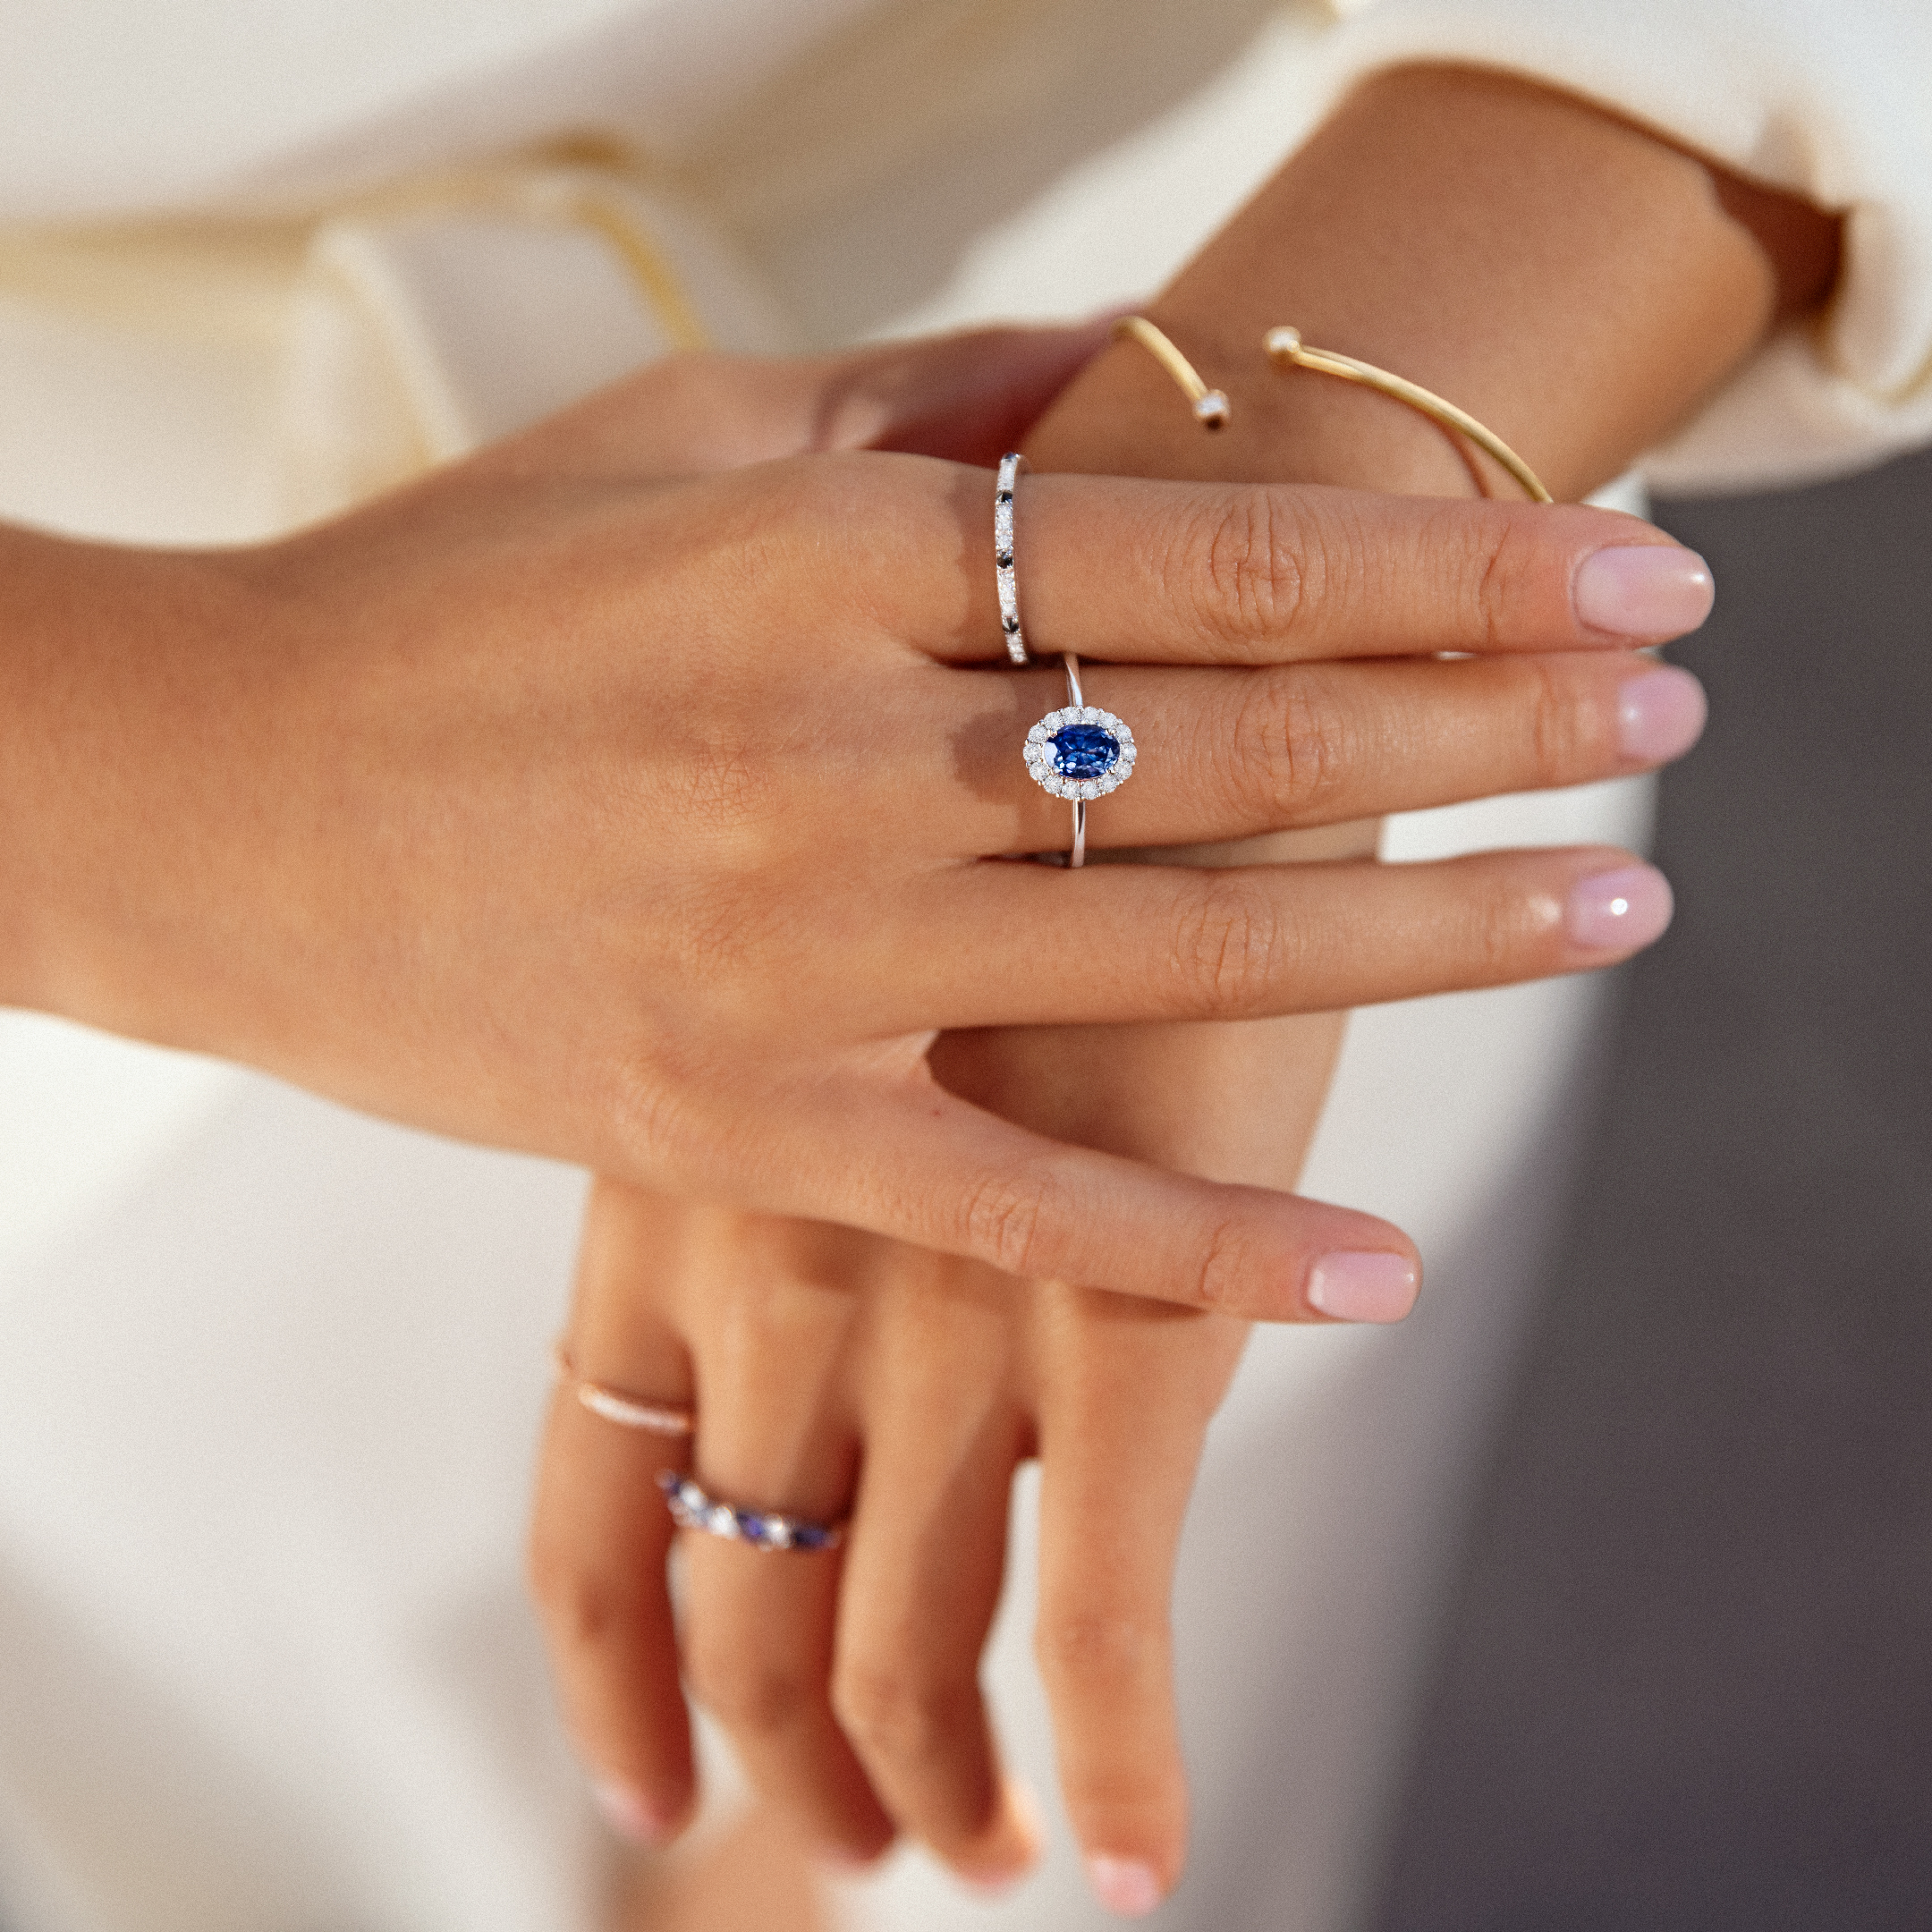 Cómo saber mi talla de anillo? - Mumit Blog - Consejos